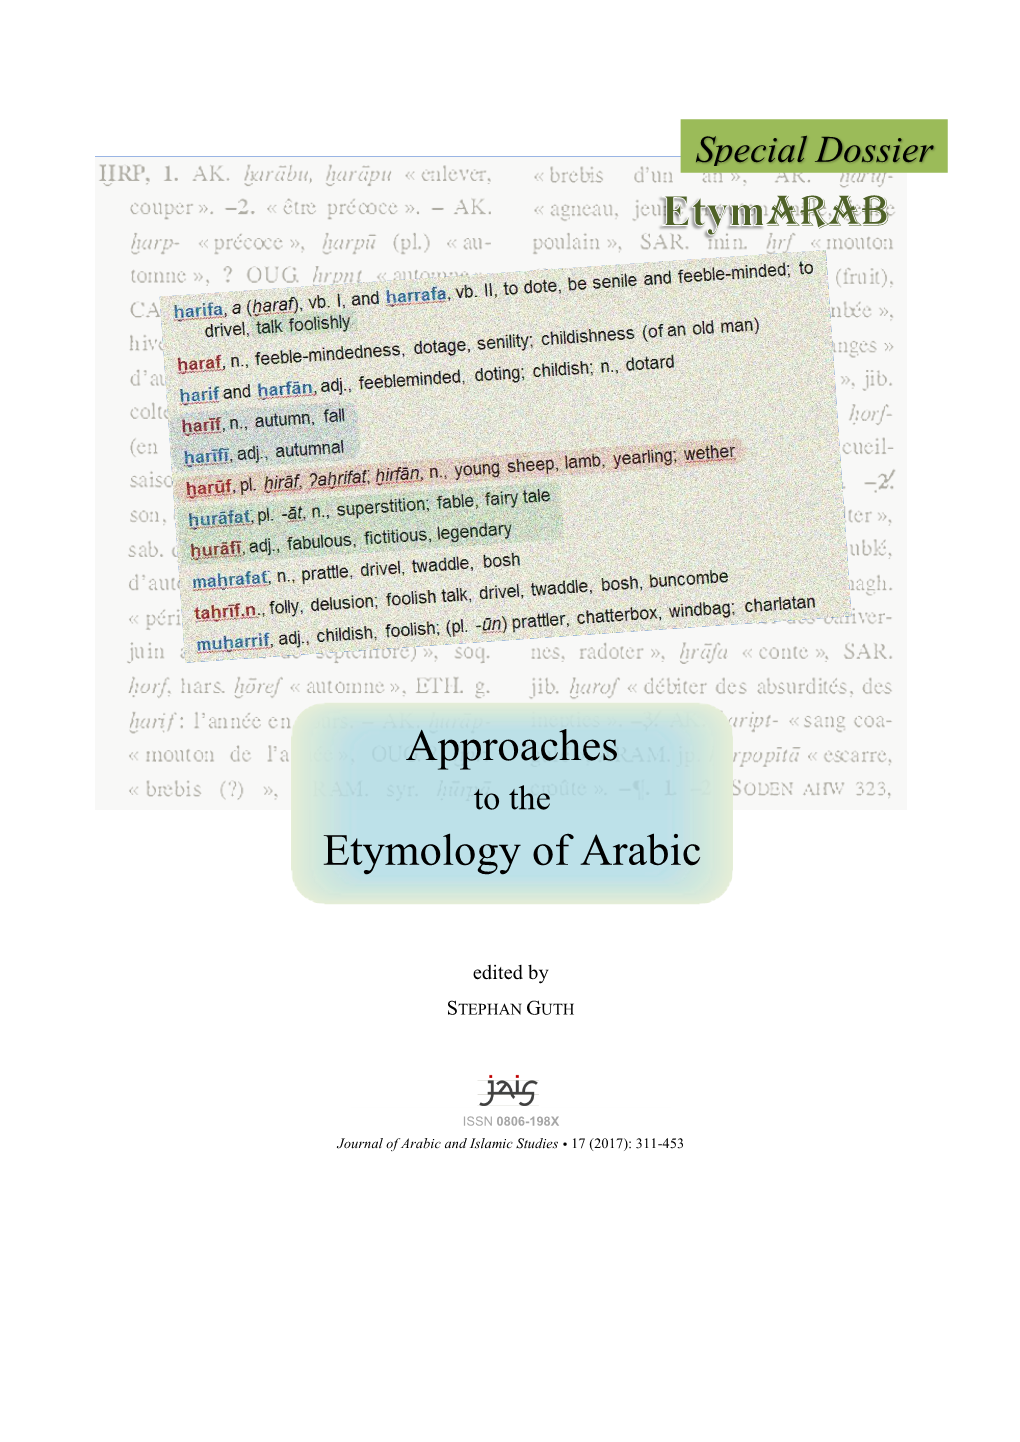 Arab Approaches Etymology of Arabic